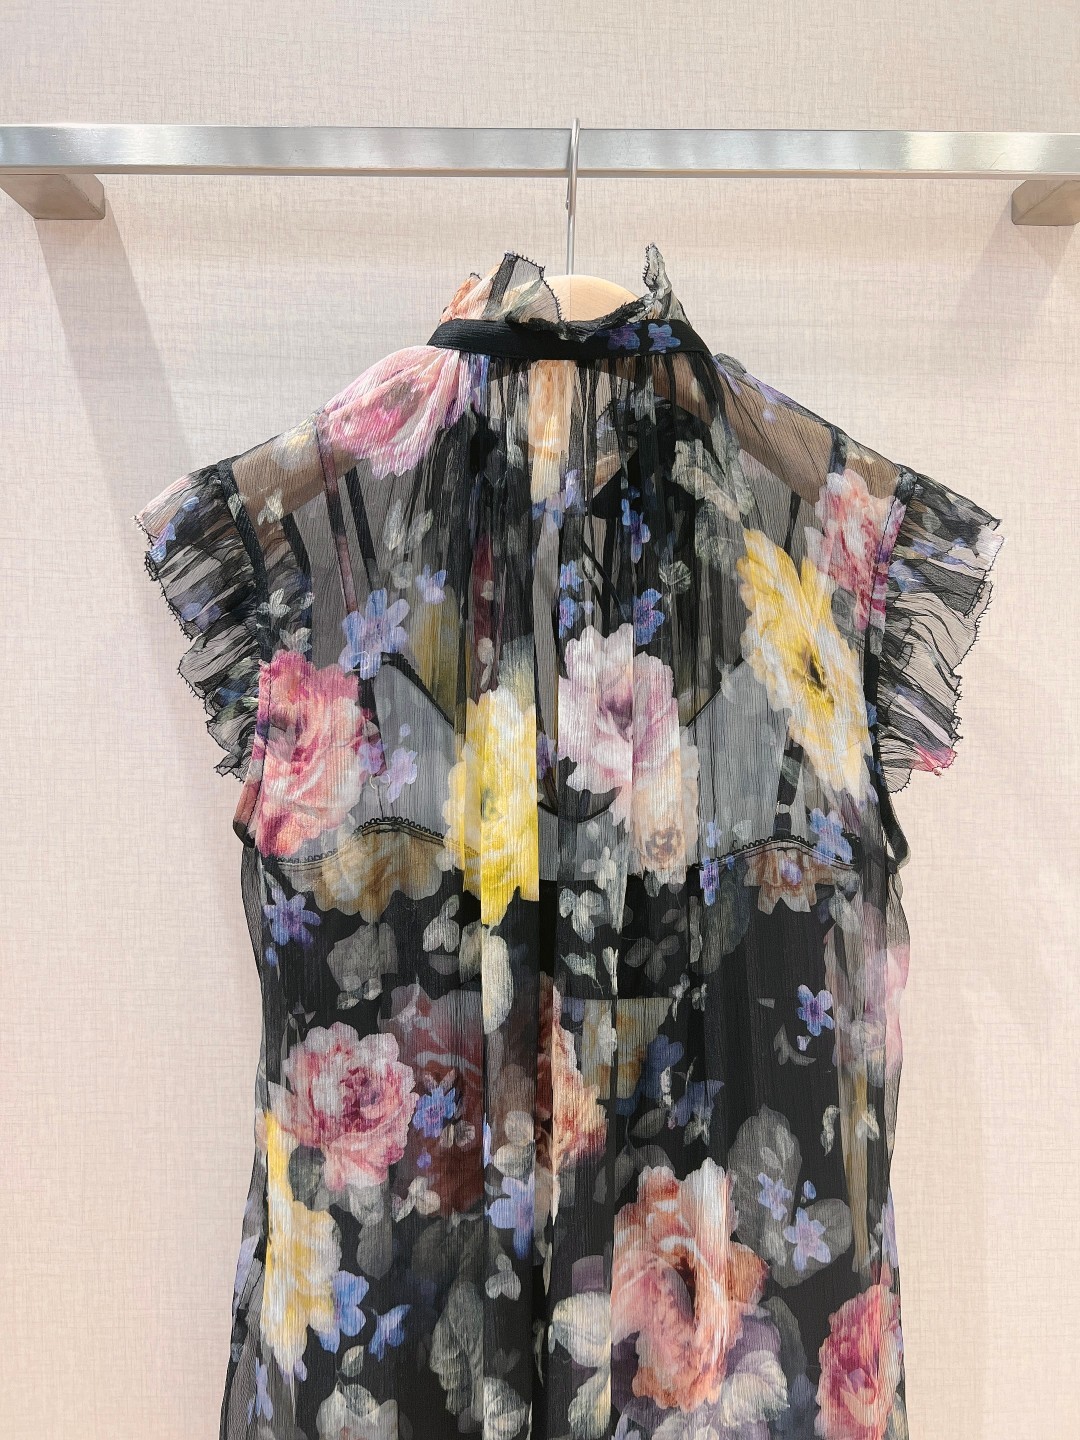 澳洲设计师品牌Zimmerman*n新品100%silk质地材质上衣领圈饰有精致的3D花卉贴花与袖圈拼接